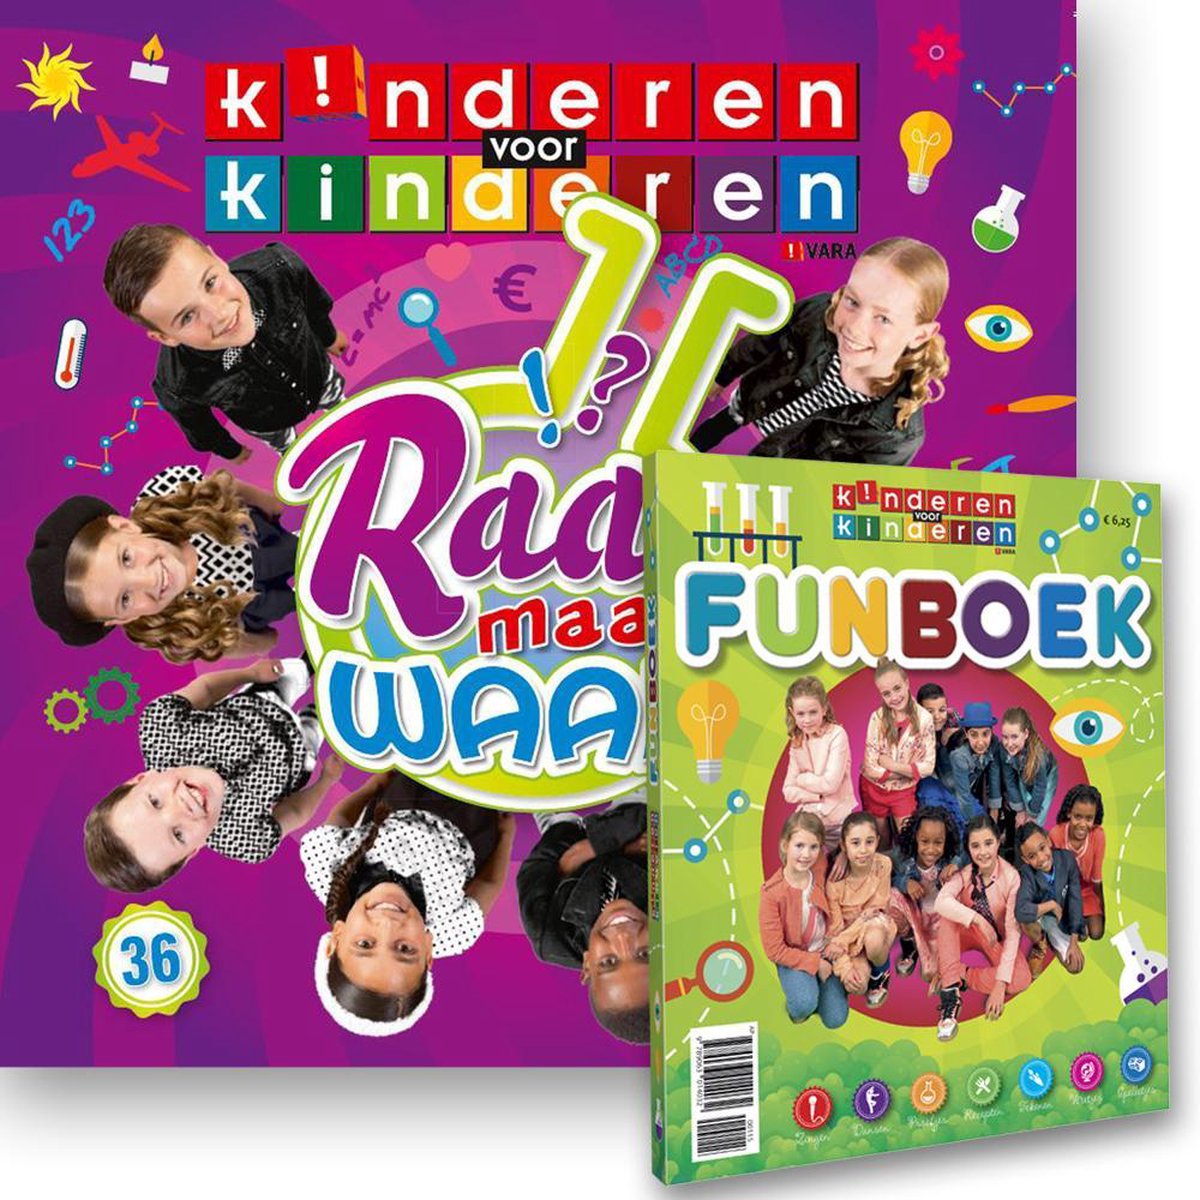 Raar Maar Waar CD 36 (Inclusief Doeboek), voor Kinderen | (album) | Muziek bol.com